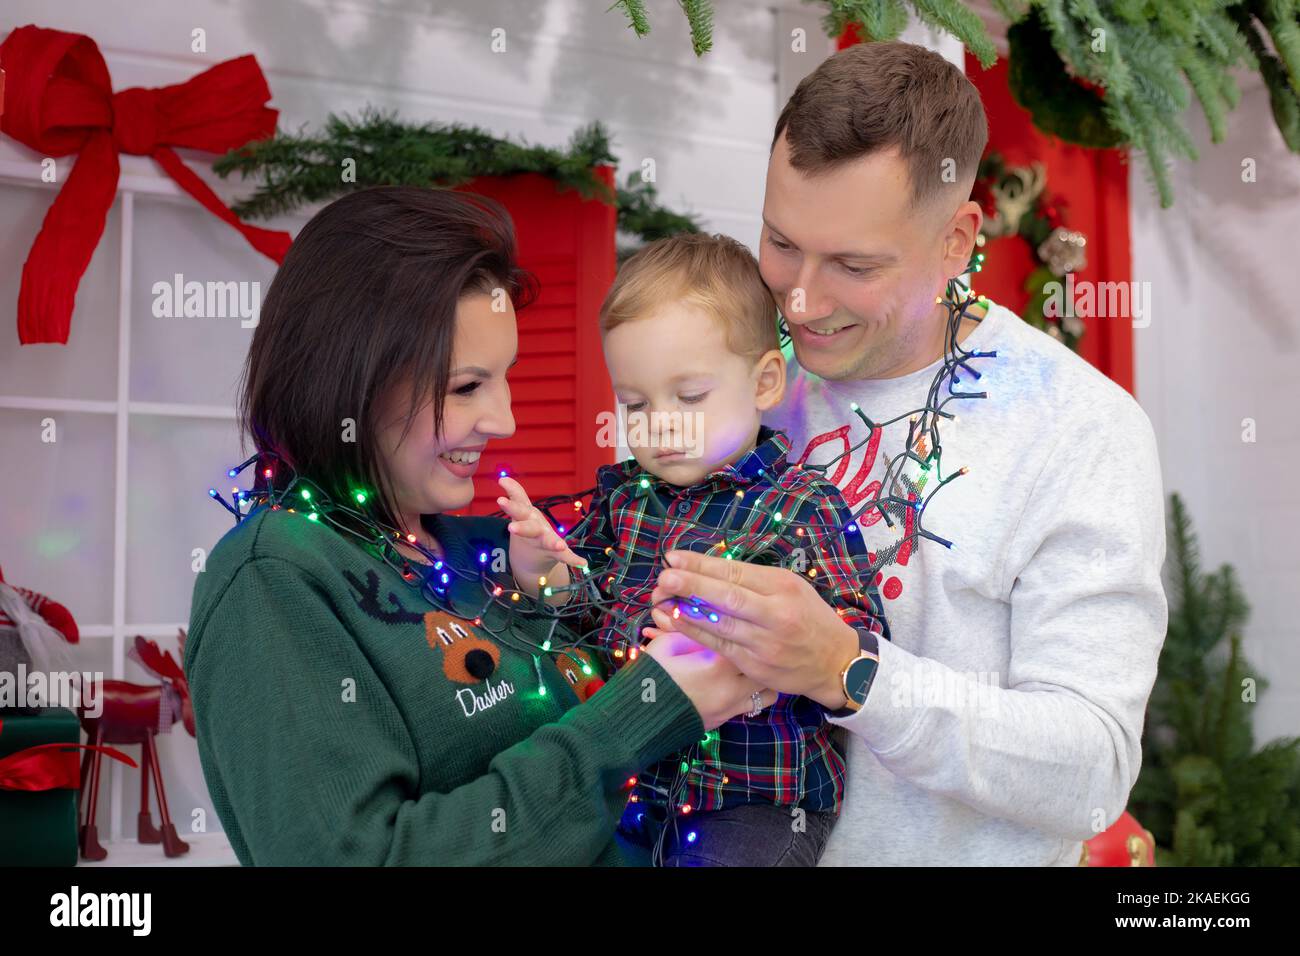 Die dreiköpfige Familie umarmt sich am weihnachts-Drehort mit roten und grünen Dekorationen. Fröhliche Mutter, Vater und kleiner Sohn hingen mit Stockfoto